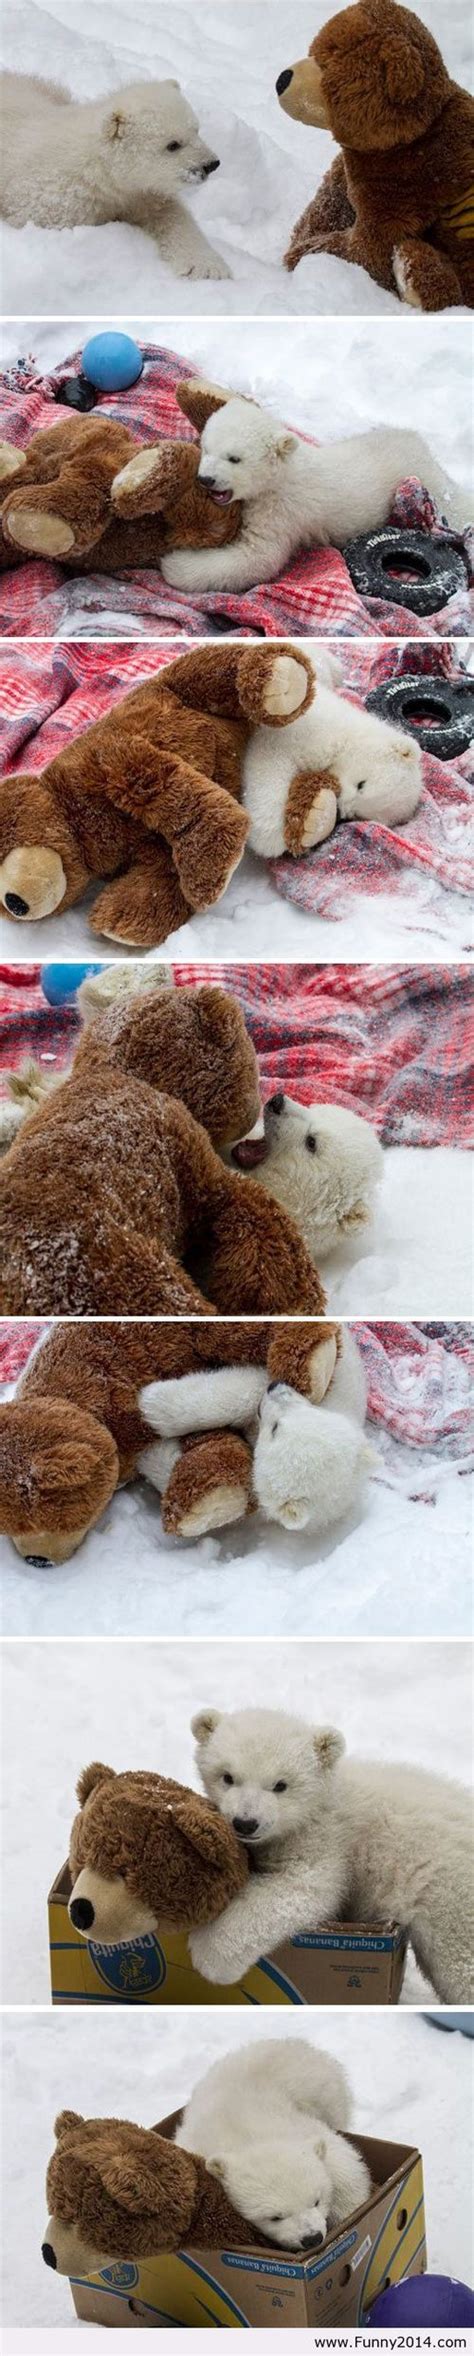 polar bear   teddy bear pictures   images